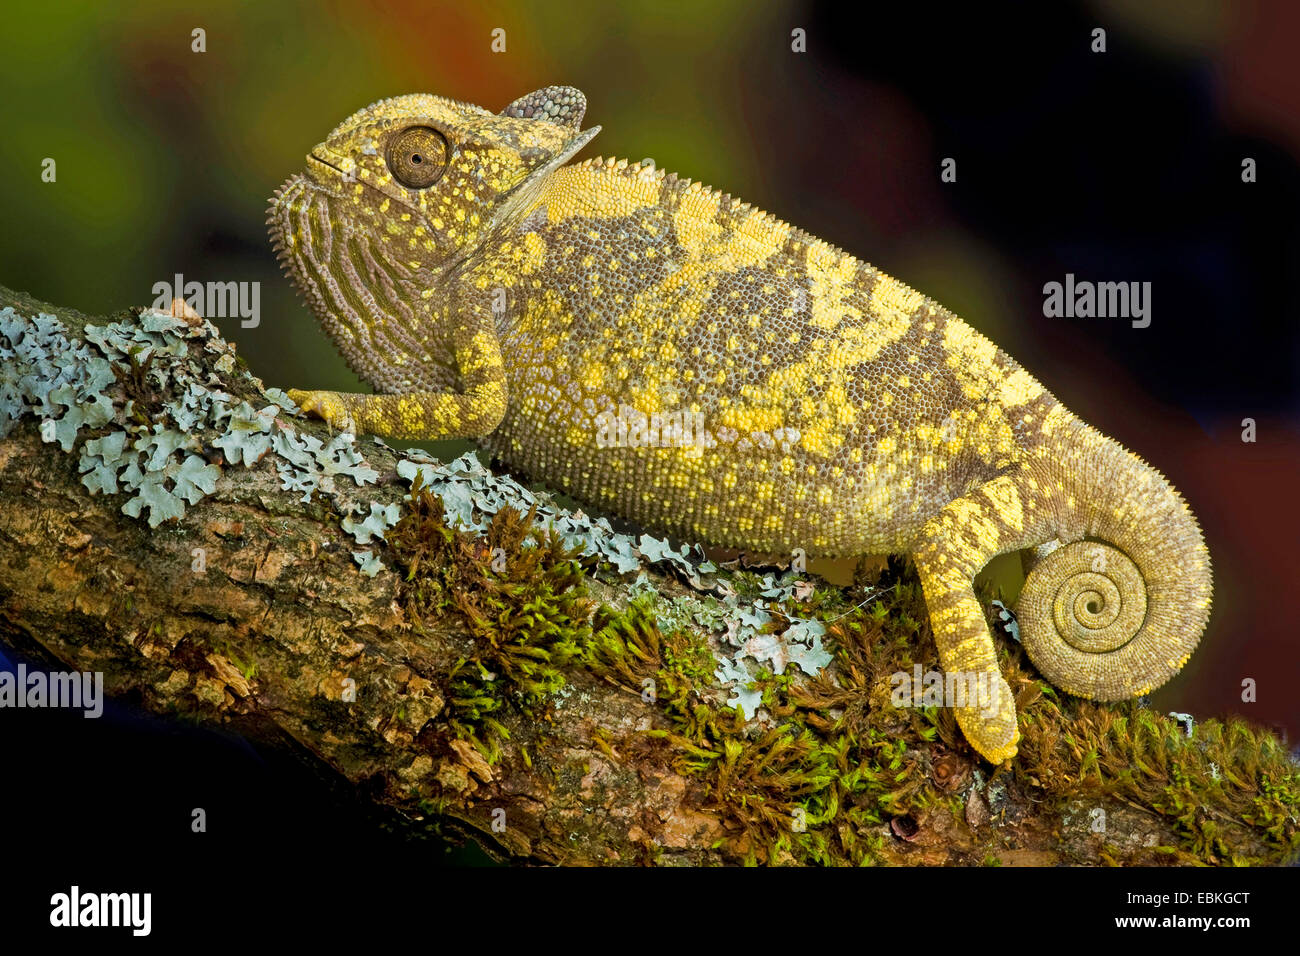 flap-necked chameleon, flapneck chameleon (Chamaeleo dilepis), sitting on a mossy twig Stock Photo